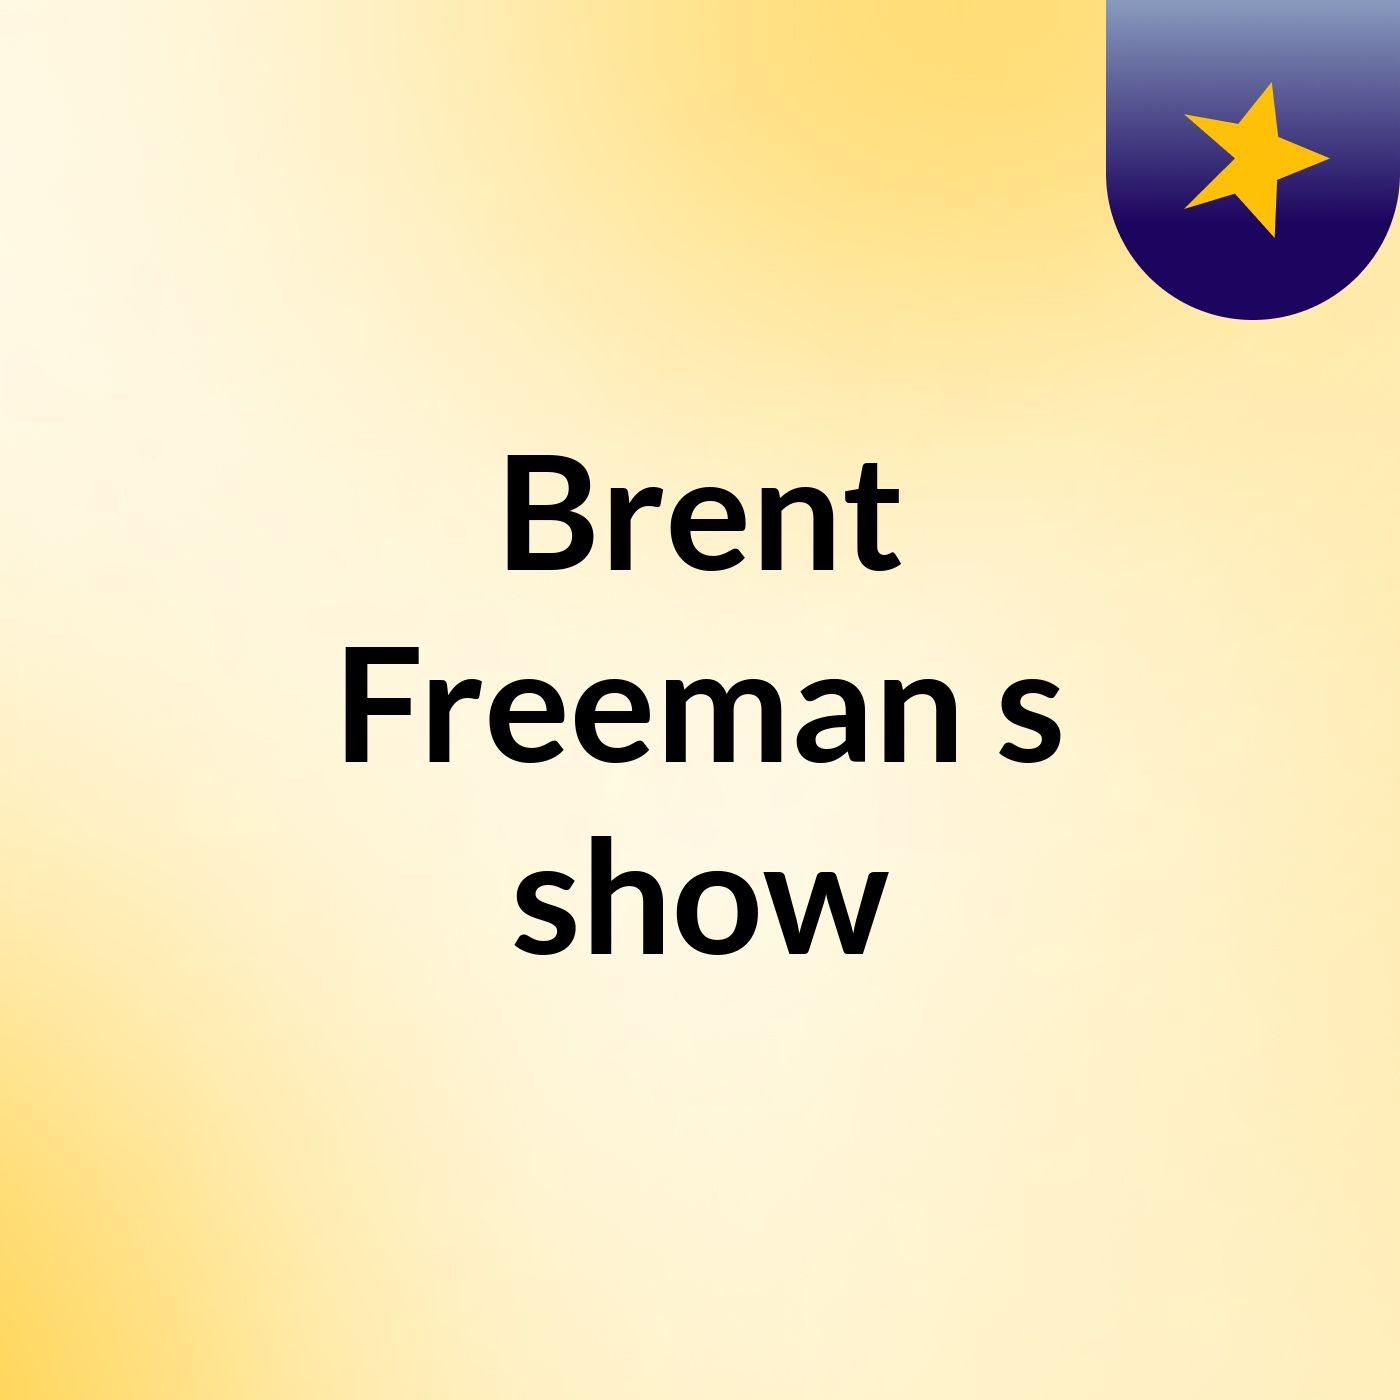 Episode 16 - Brent Freeman's show